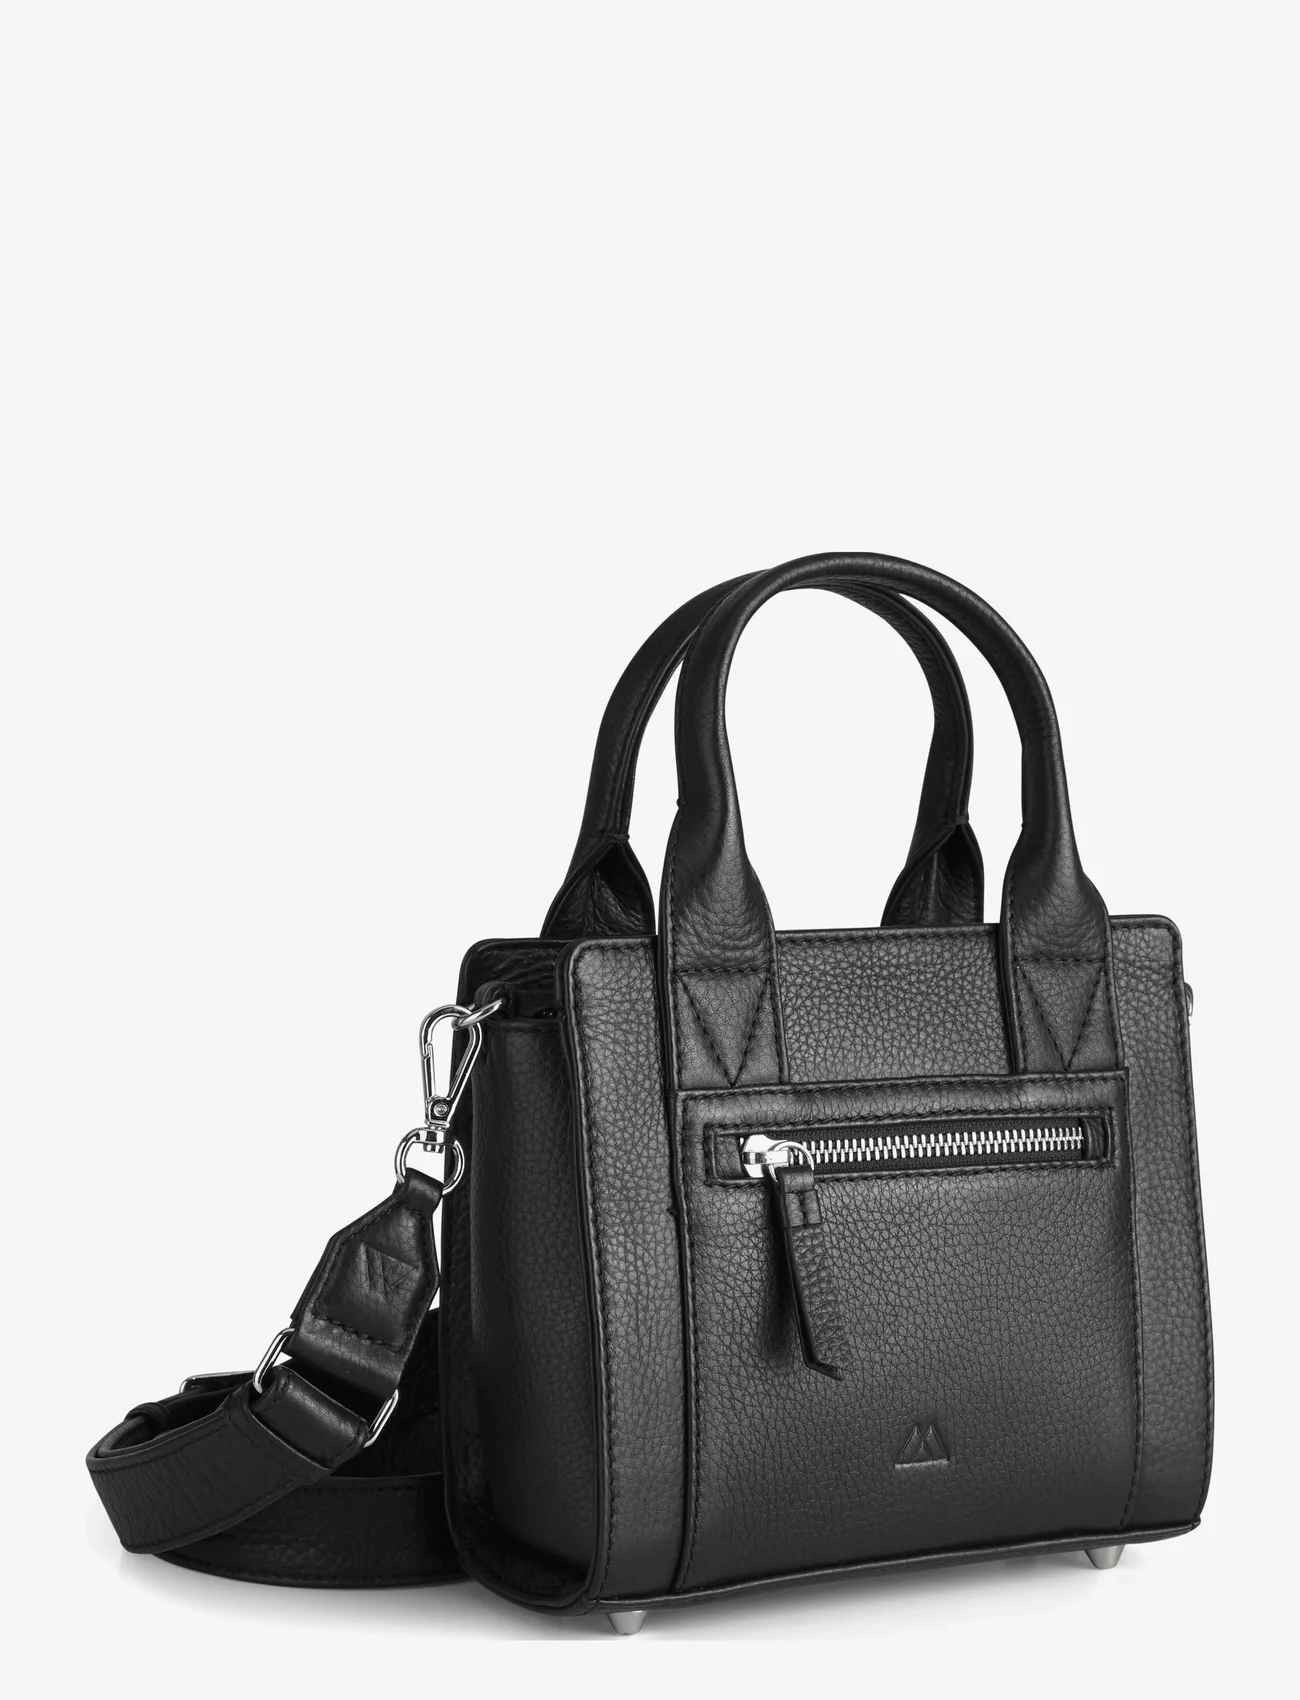 Markberg - MaikaMBG Mini Bag, Grain - festkläder till outletpriser - black - 1